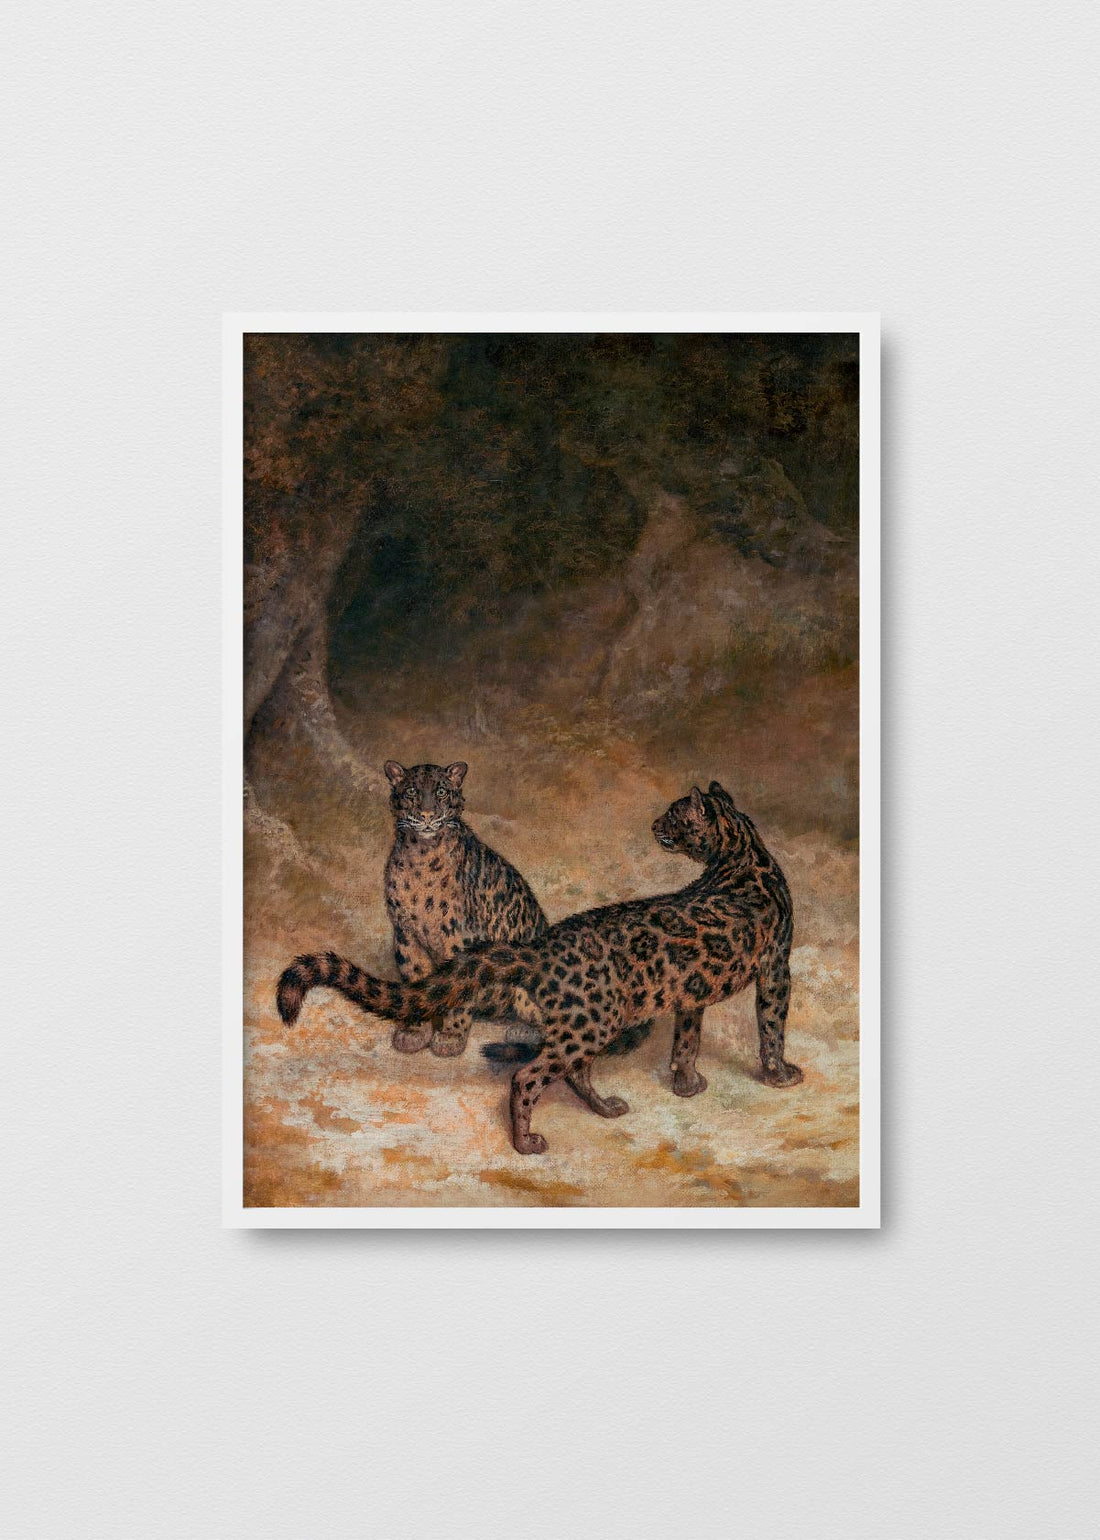 Leopardos - Testimoniaprints